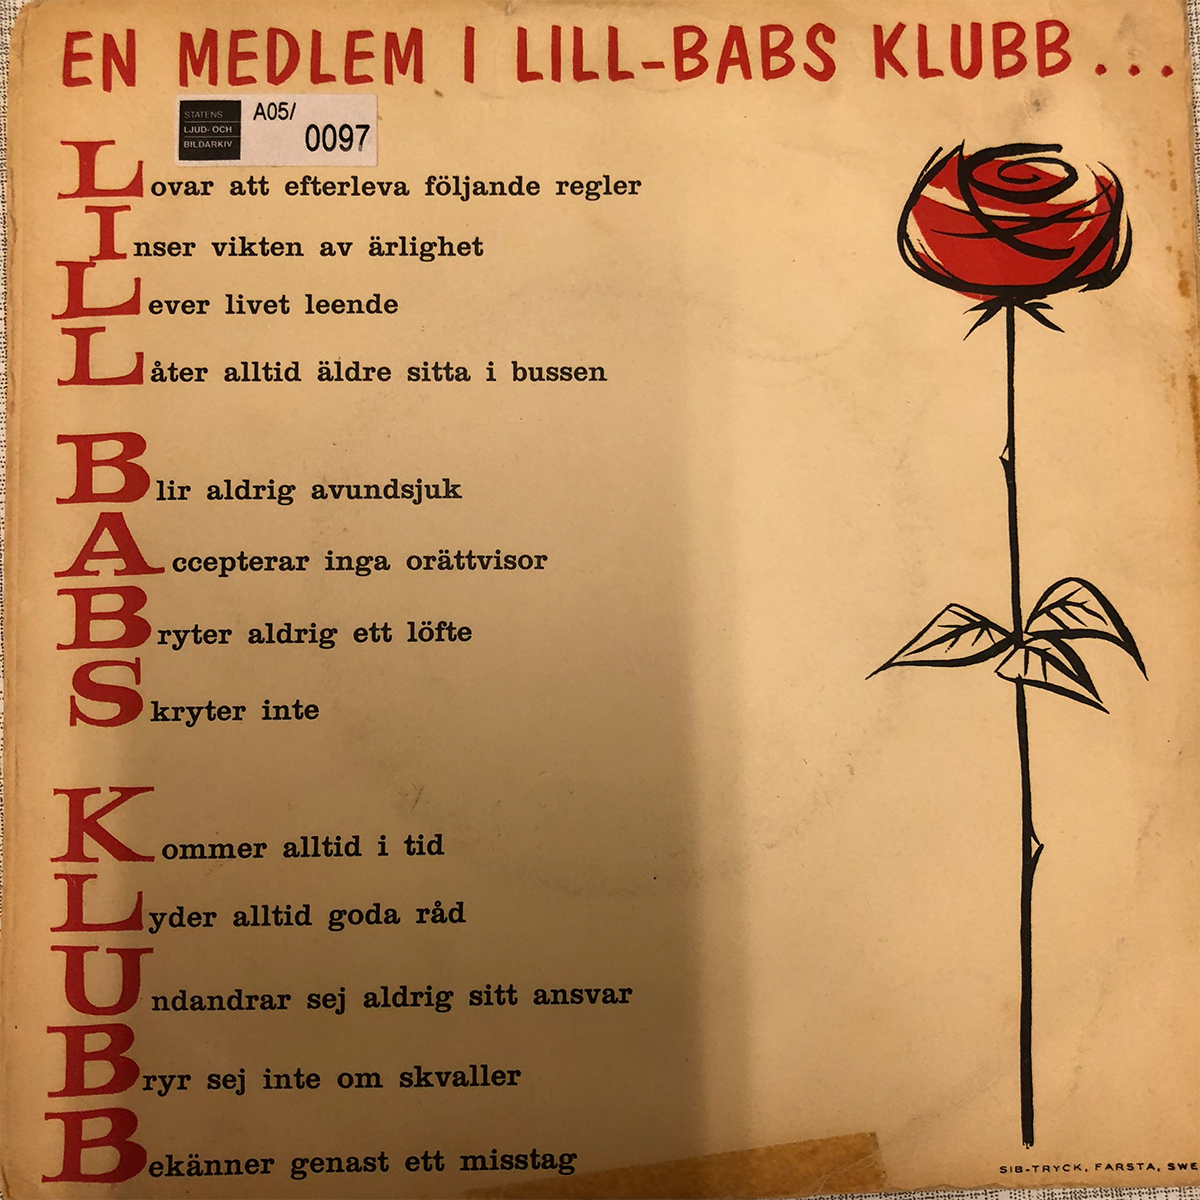 Omslag till Lill-Babs "Splurr!", Karusell 1962.